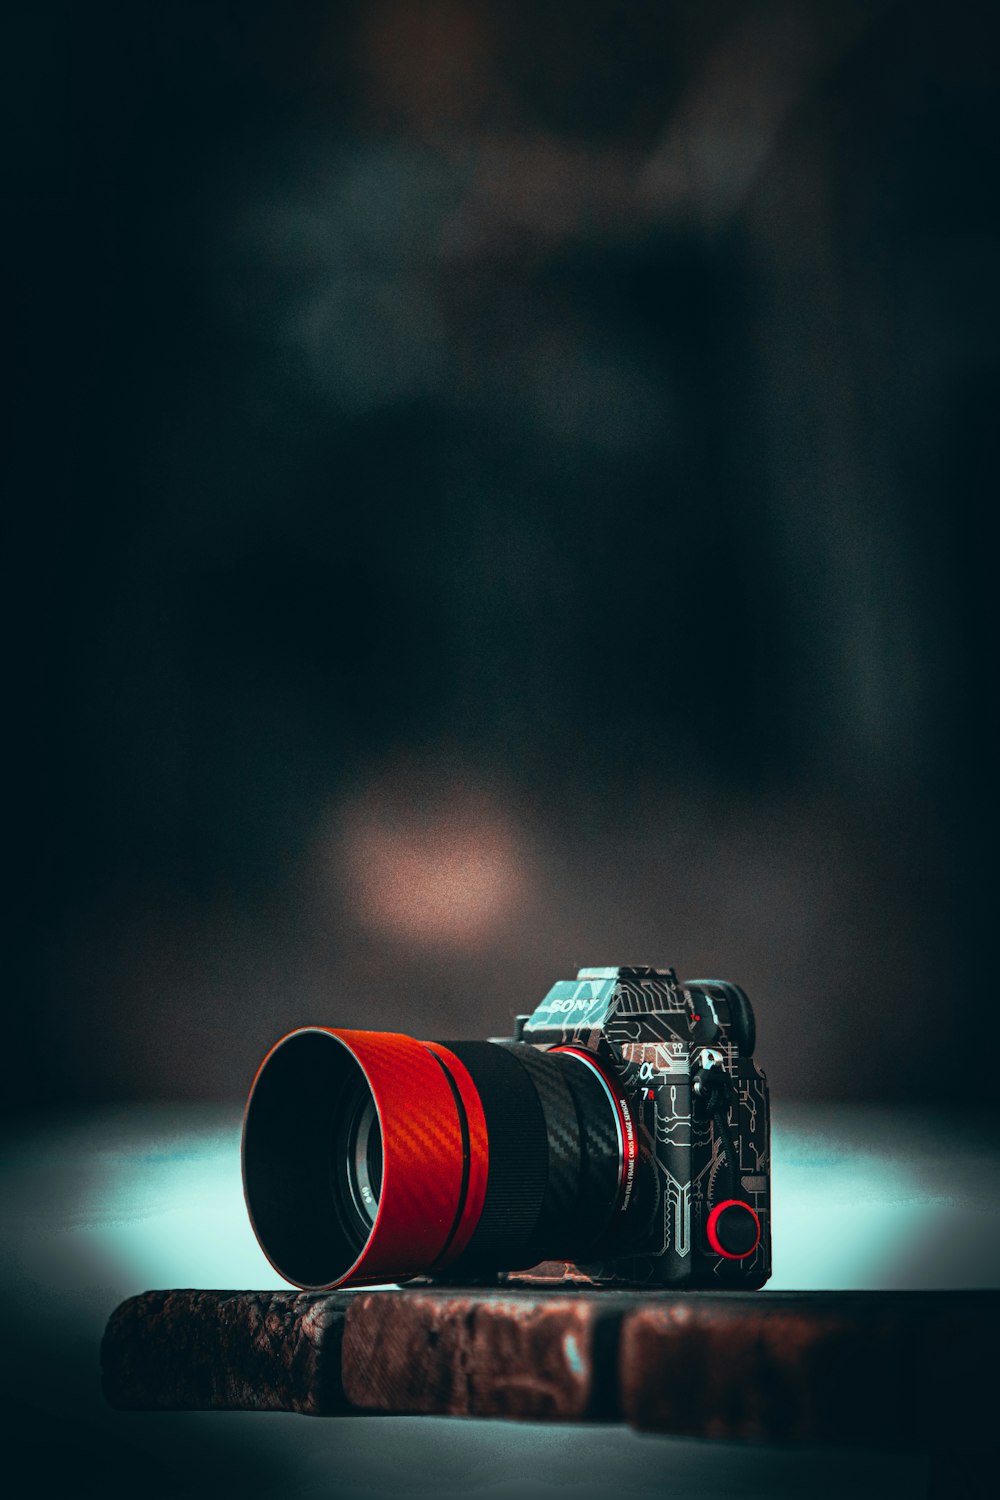 câmera dslr preta e vermelha